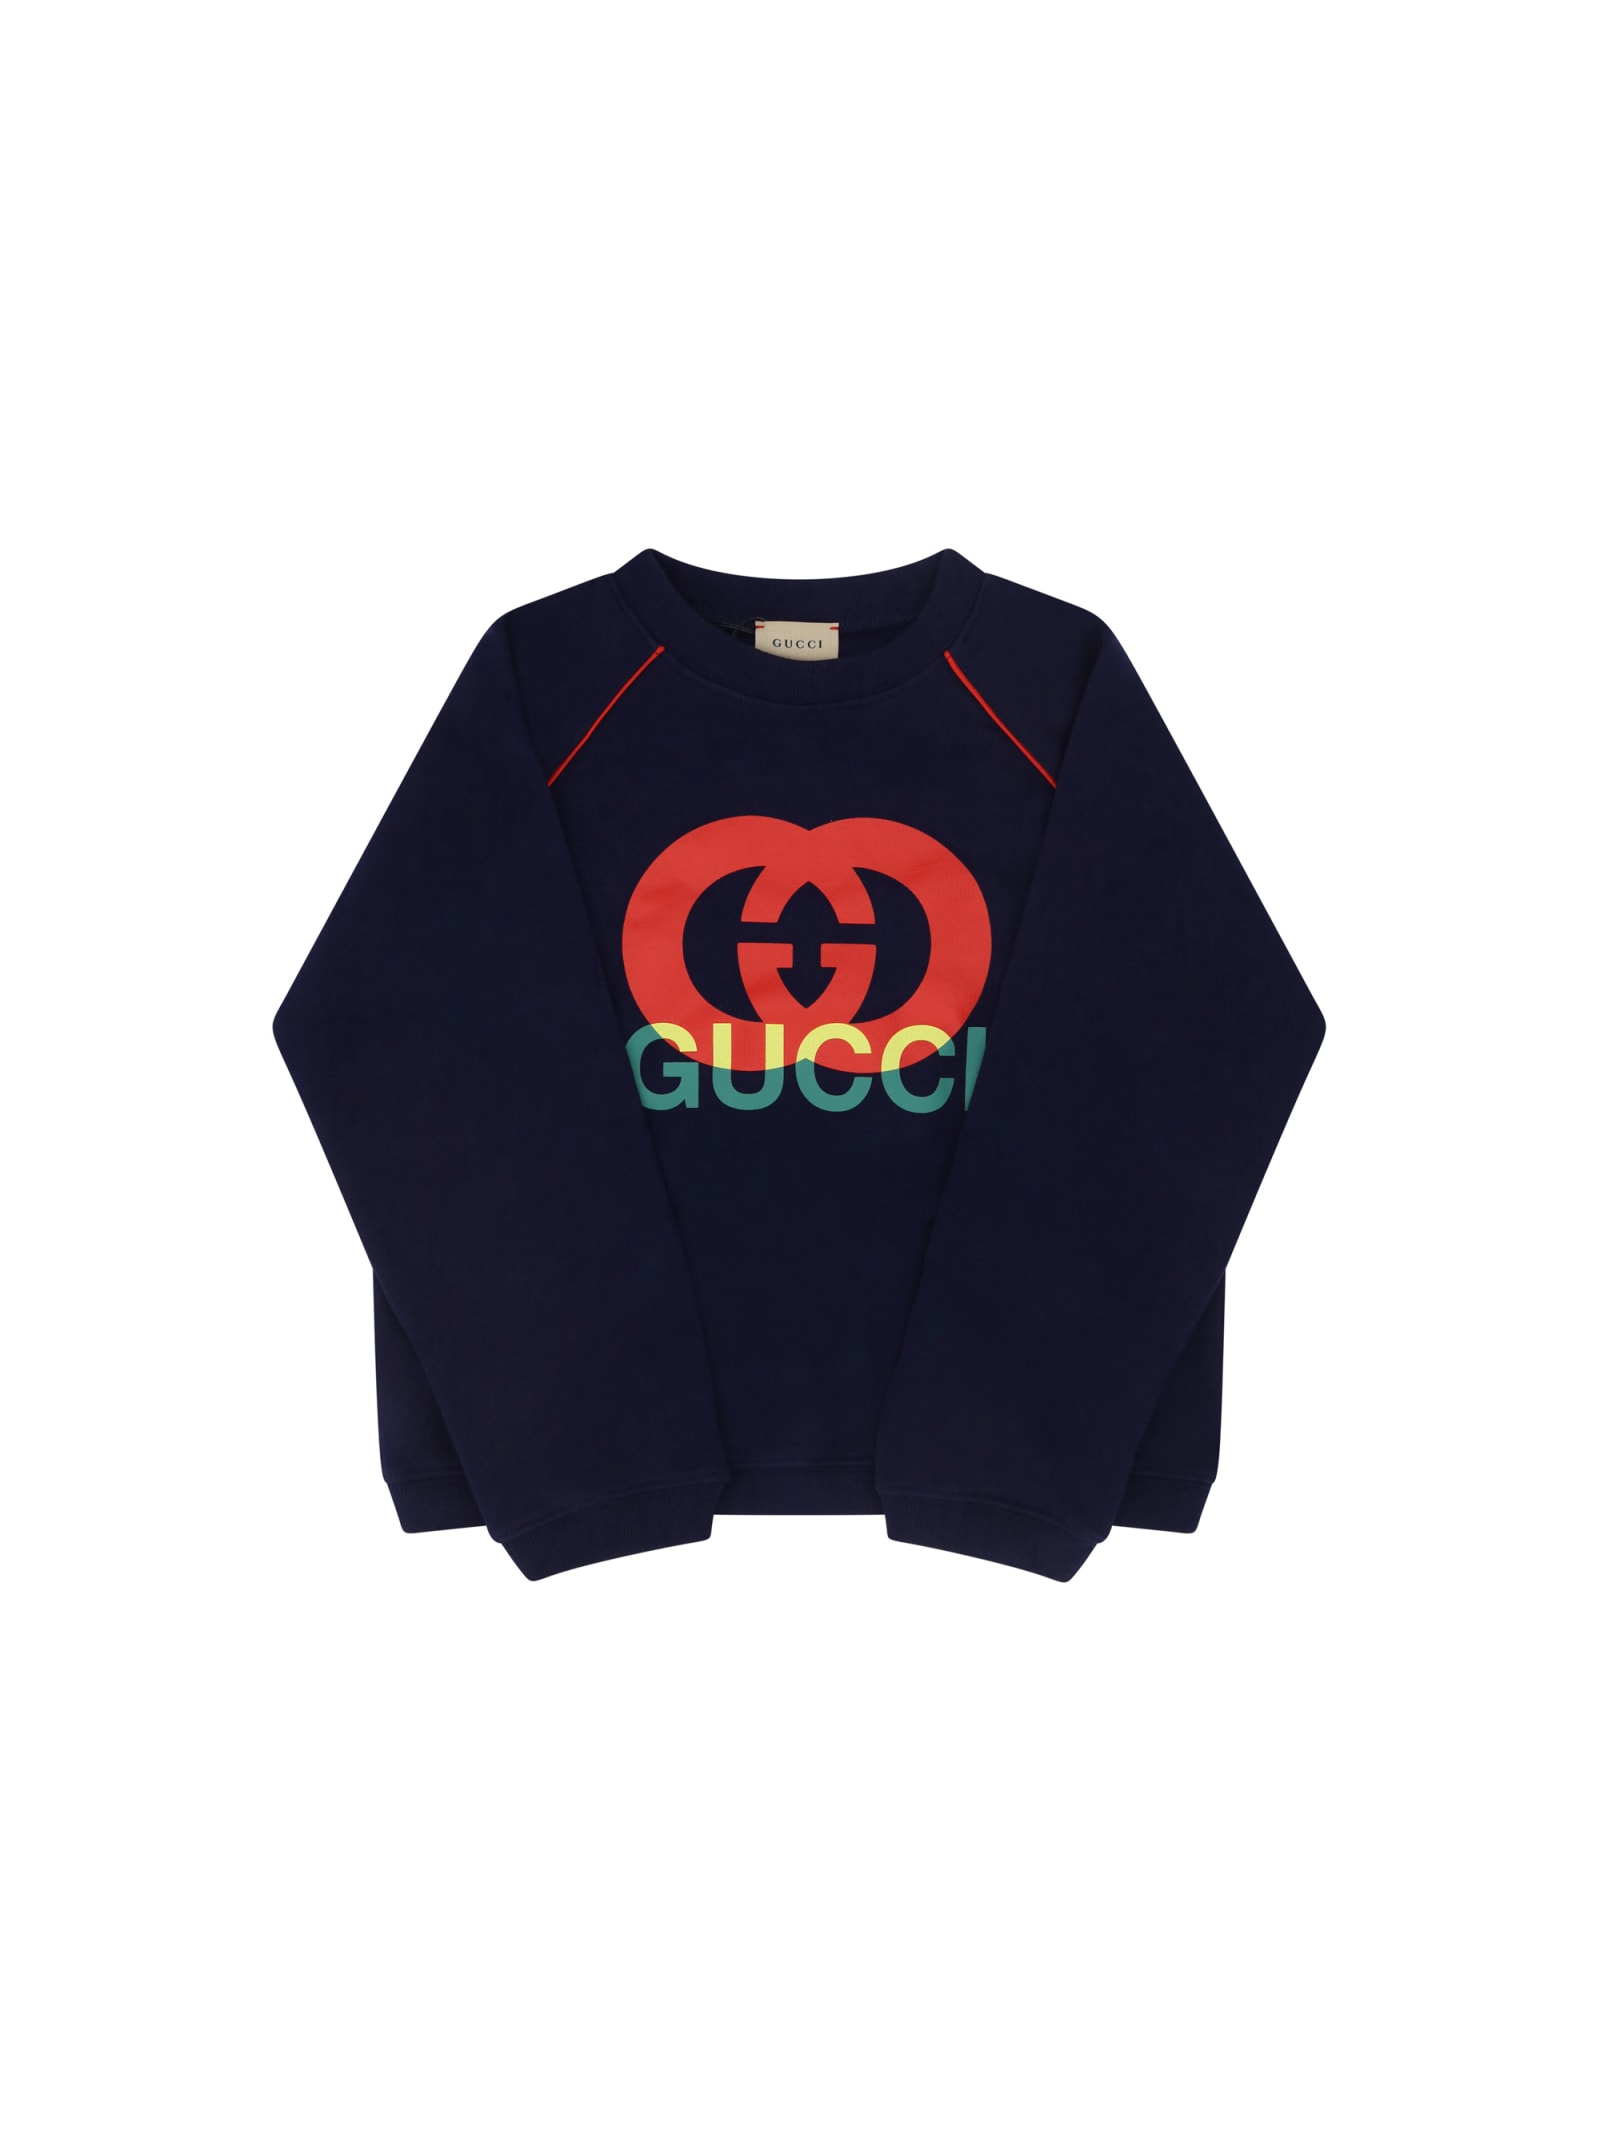 Gucci Sweatshirt For Boy